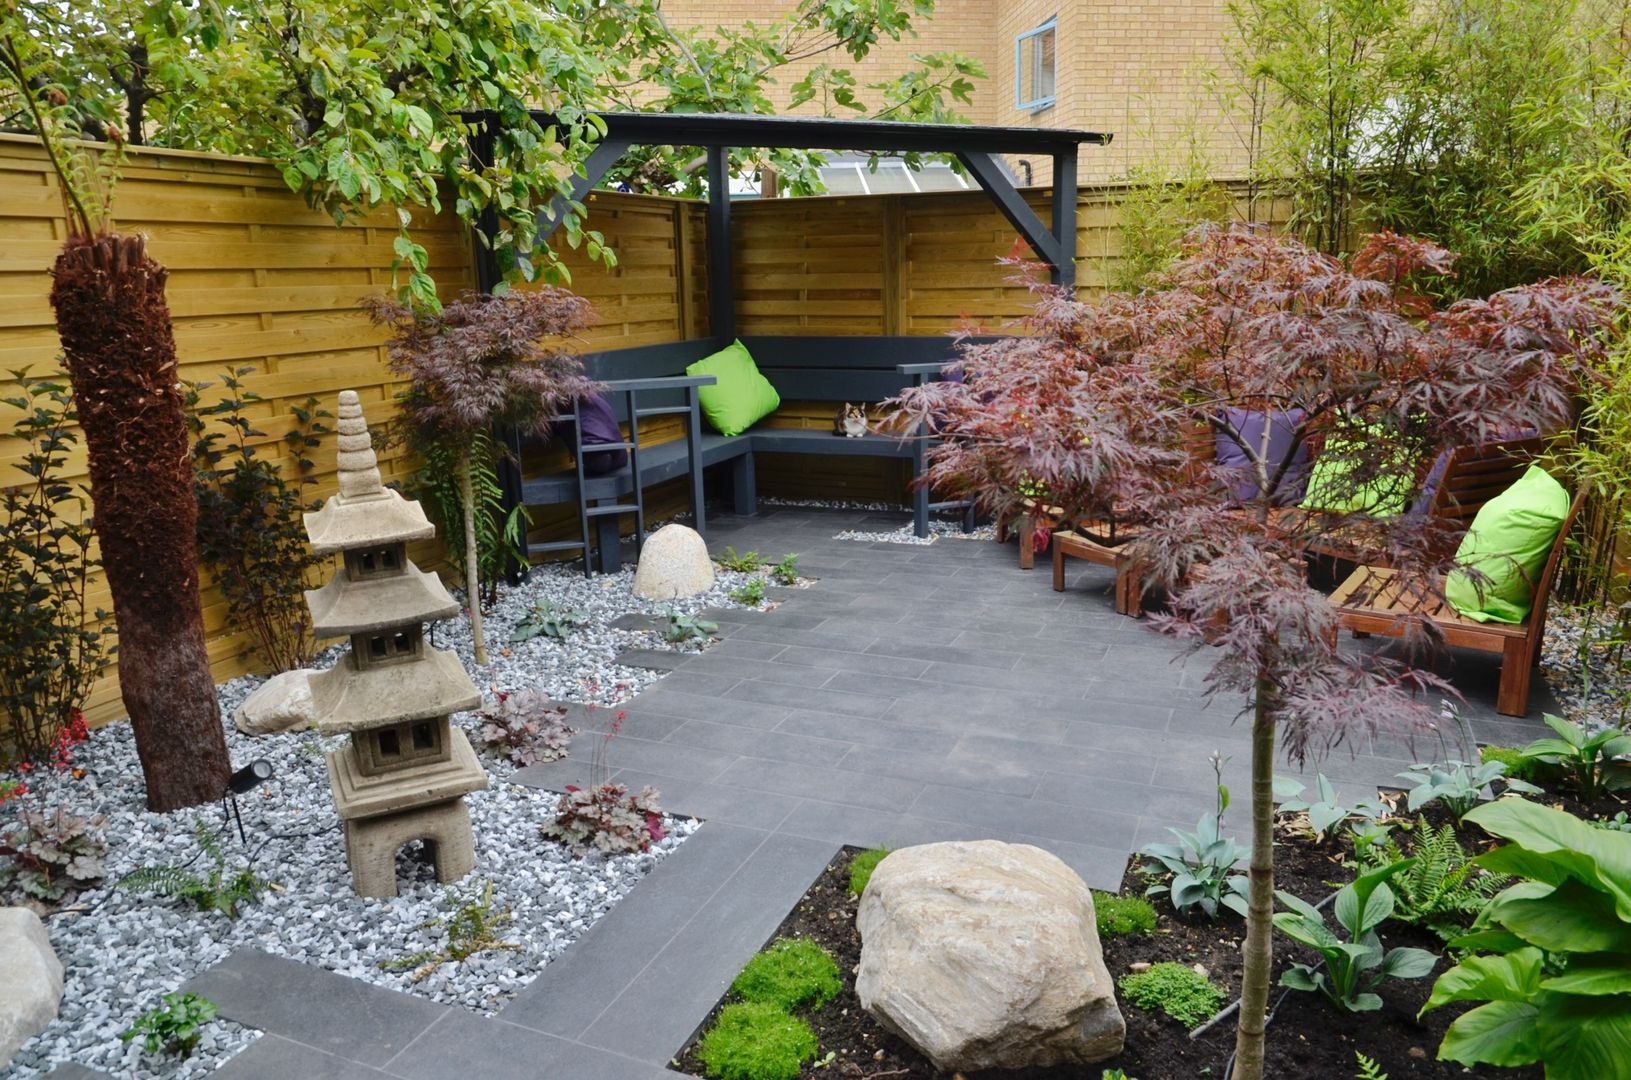 Great garden ideas for backyard entertainment | homify